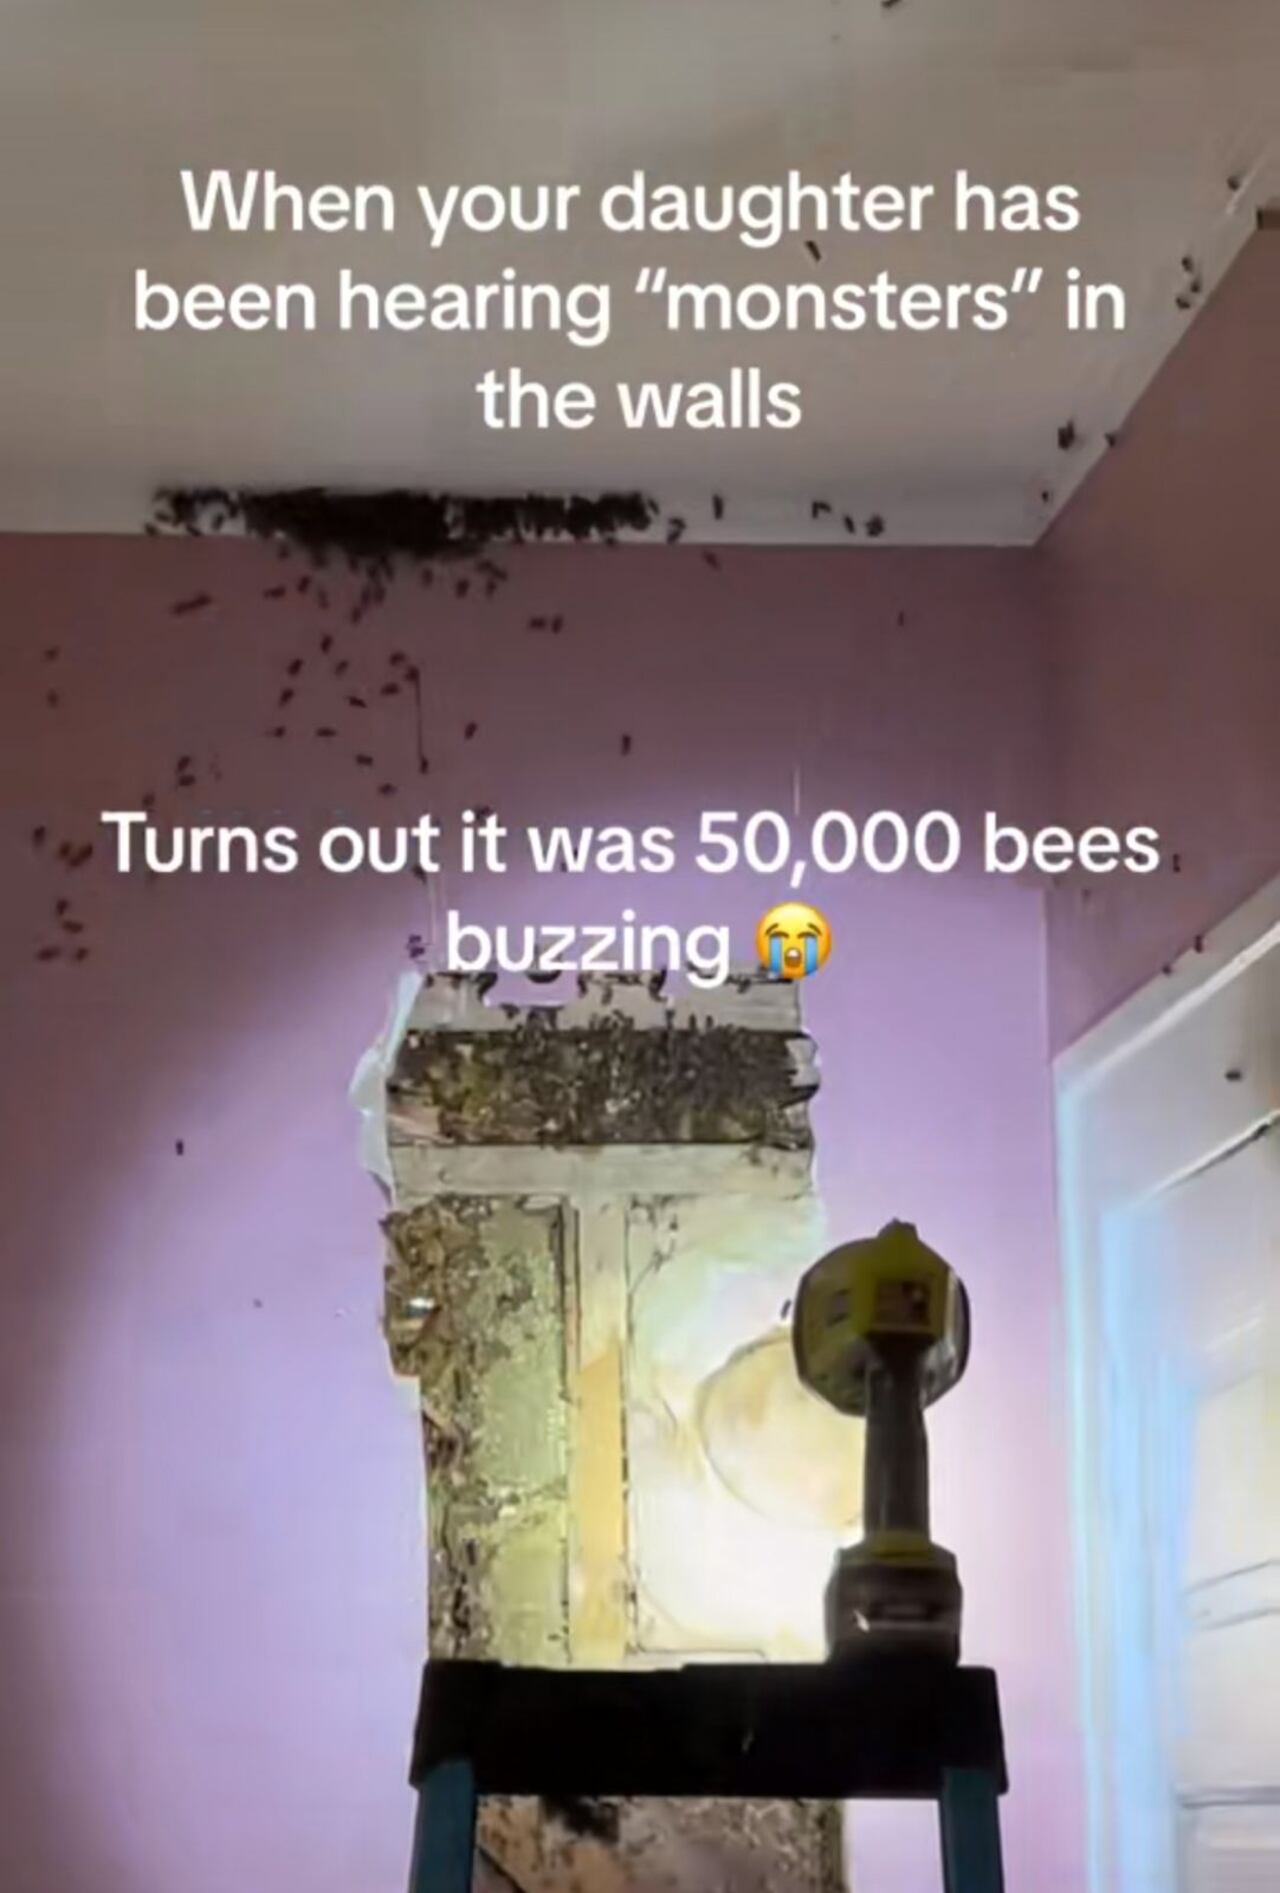 La habitación estaba invadida por abejas